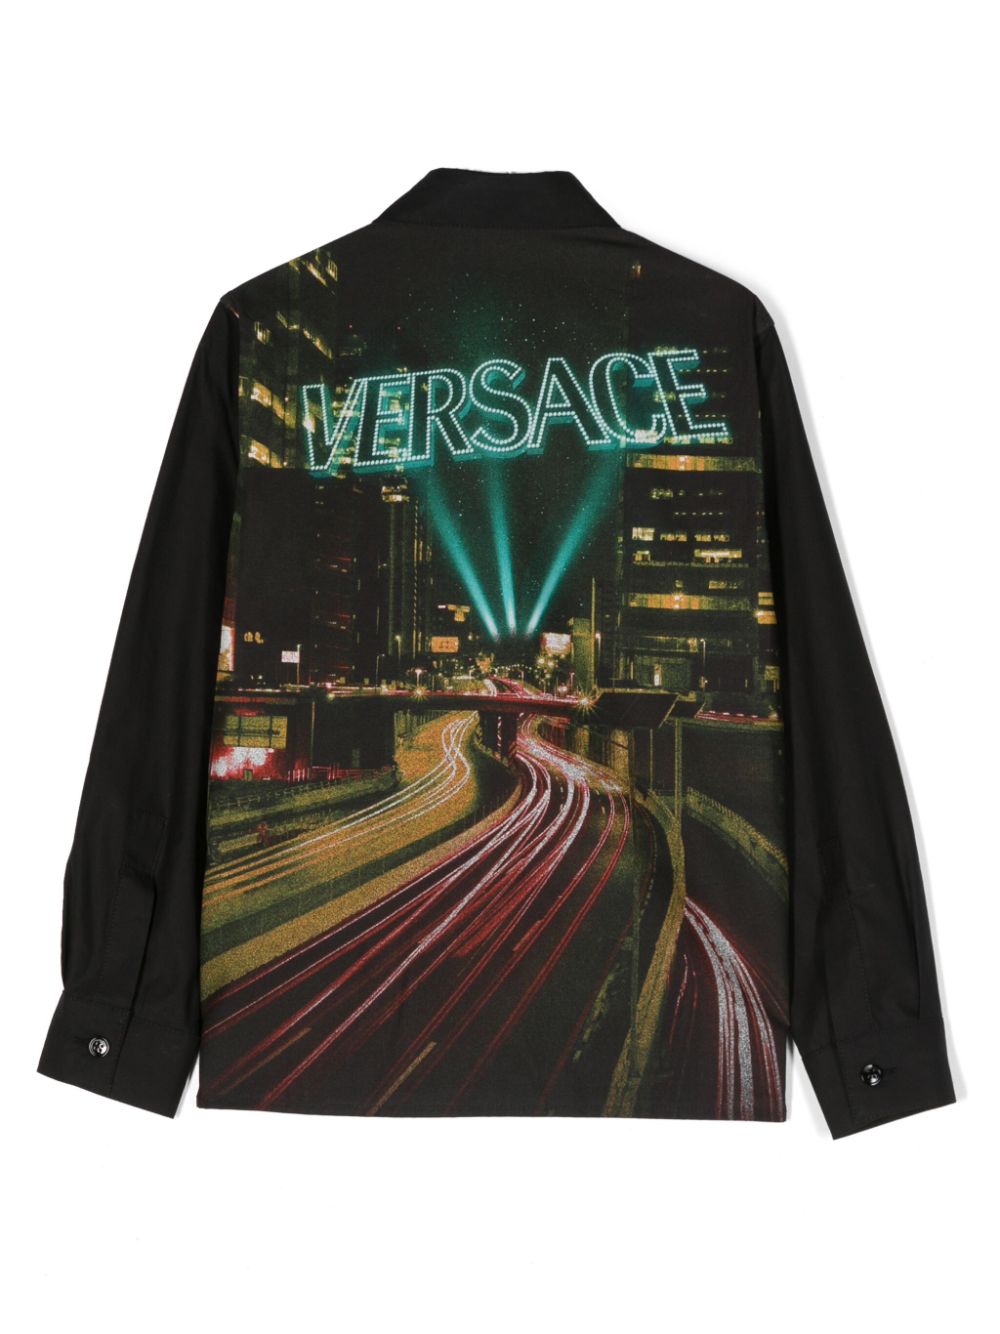 Versace kids long sleeve shirt